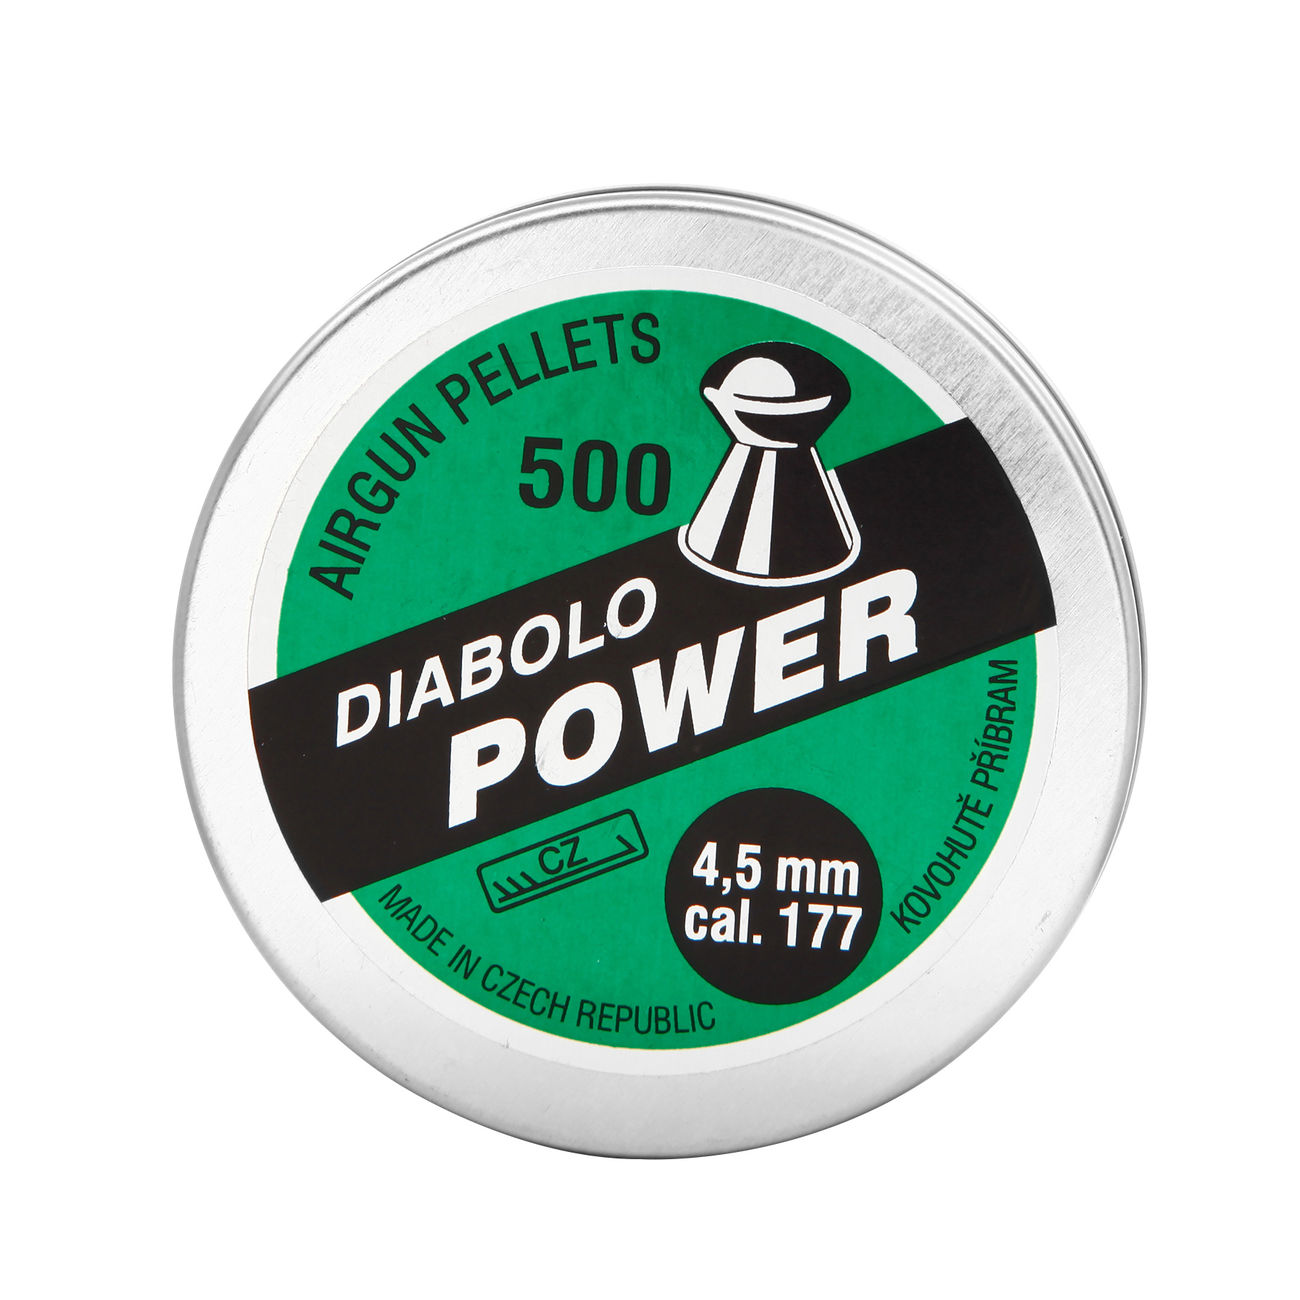 Kovohute Diabolo Power 4,5 mm 500 Stck Bild 3